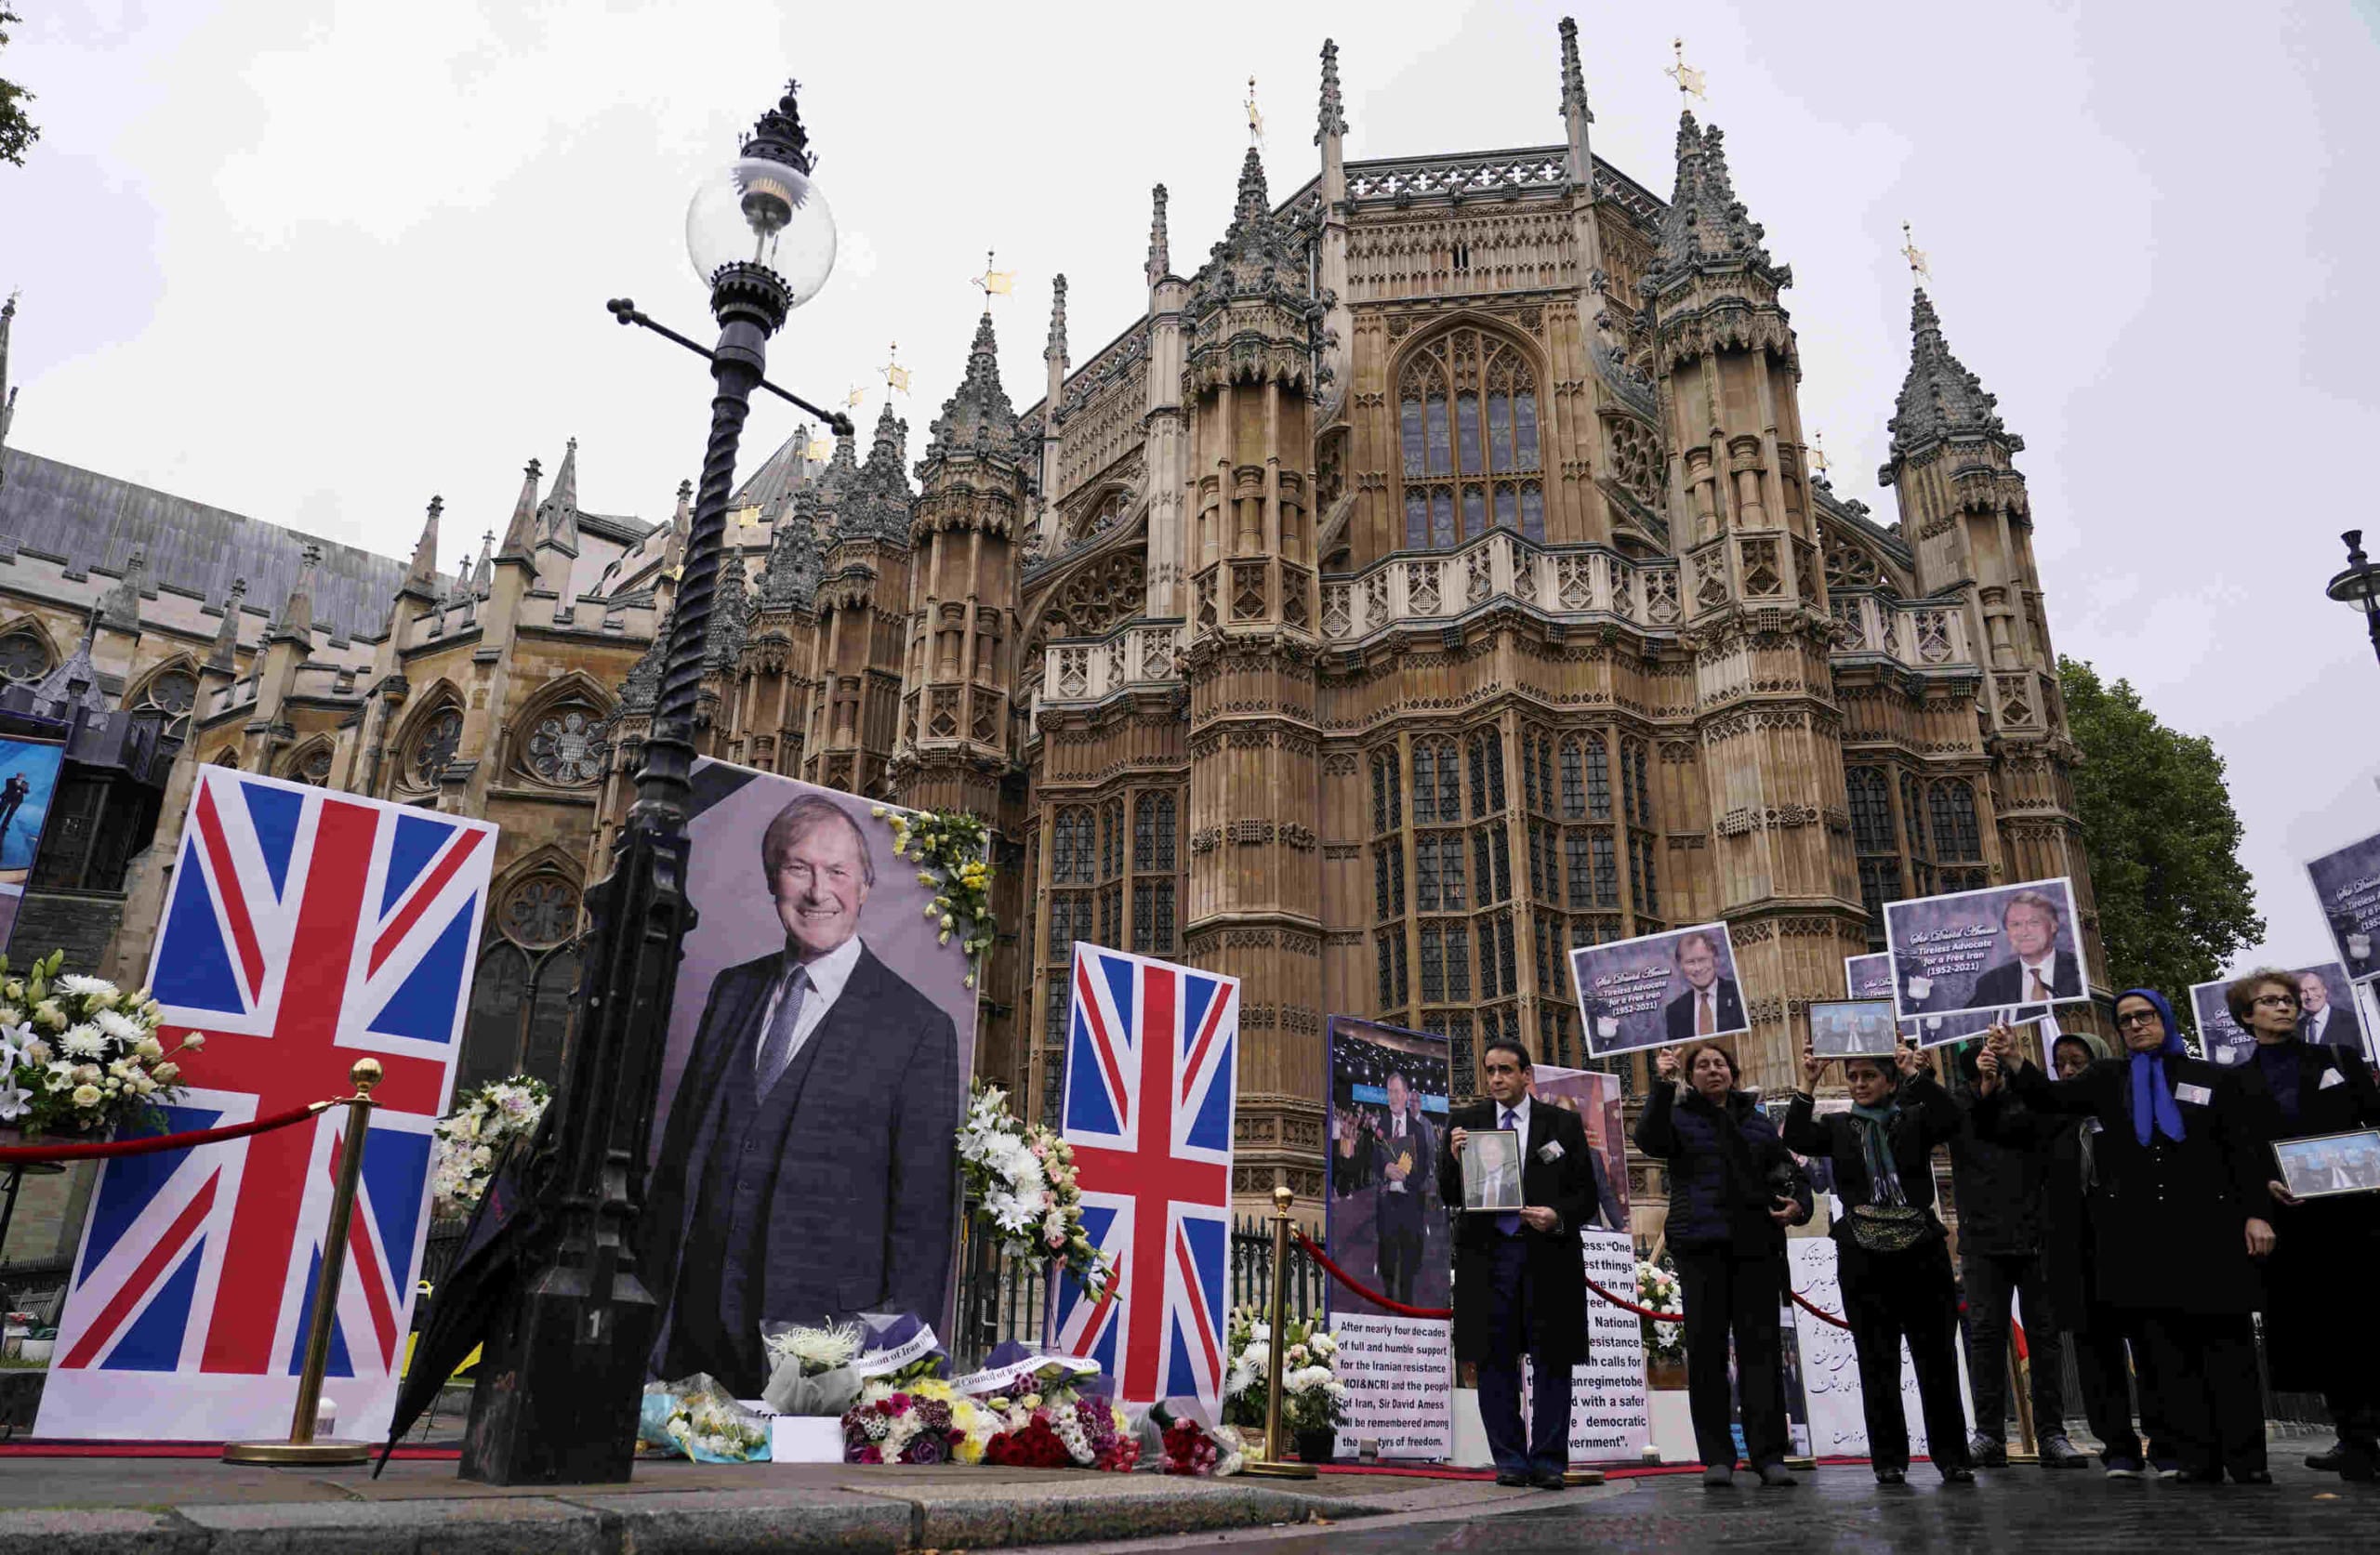 United Kingdom, terrorism, threat against MPs, David Amess, Priti Patel